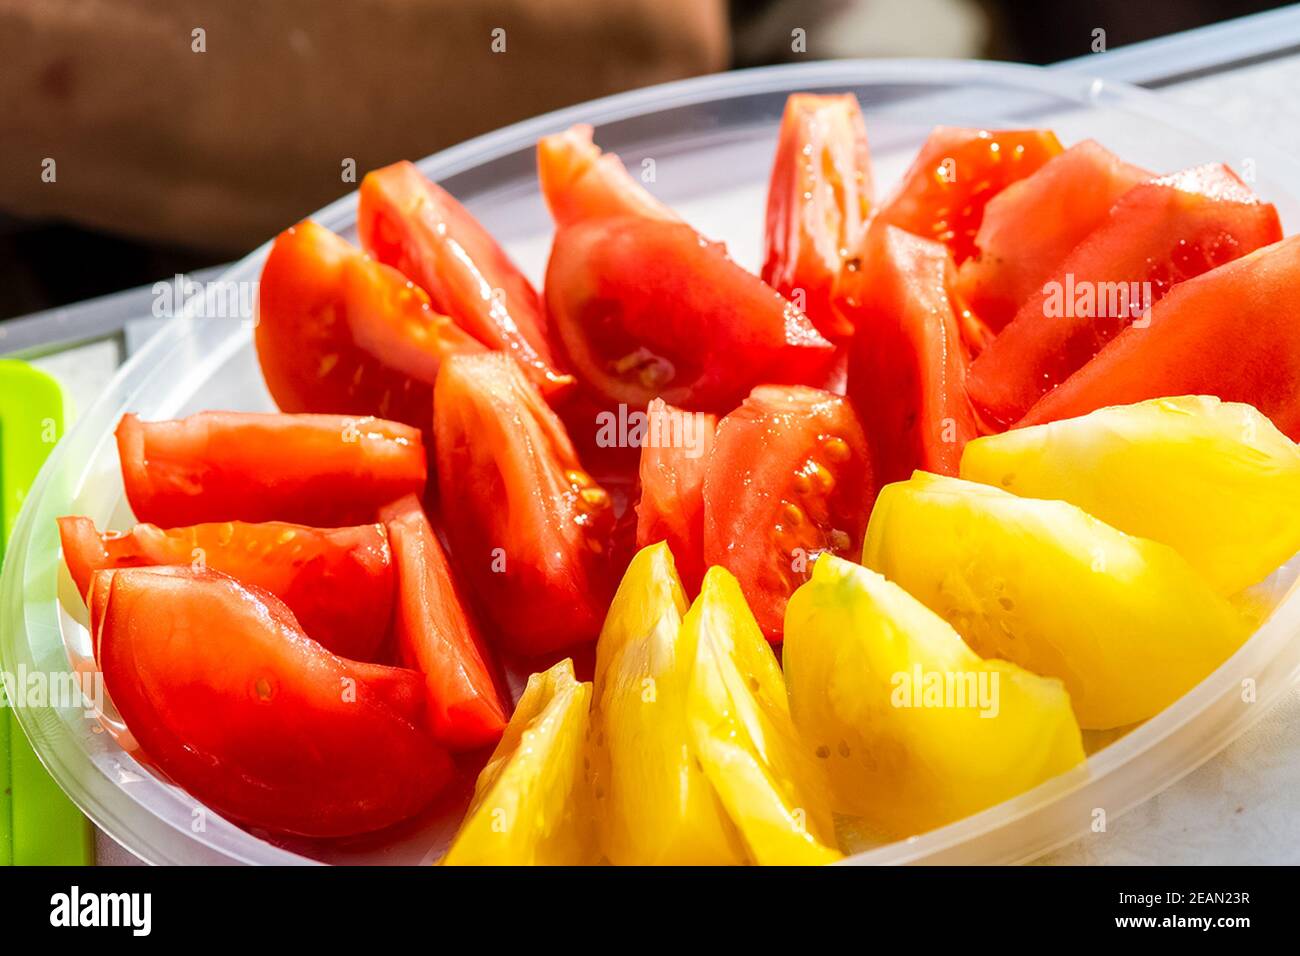 Pomodori in piatto tagliati a fette. Pomodori rossi e gialli. Foto Stock